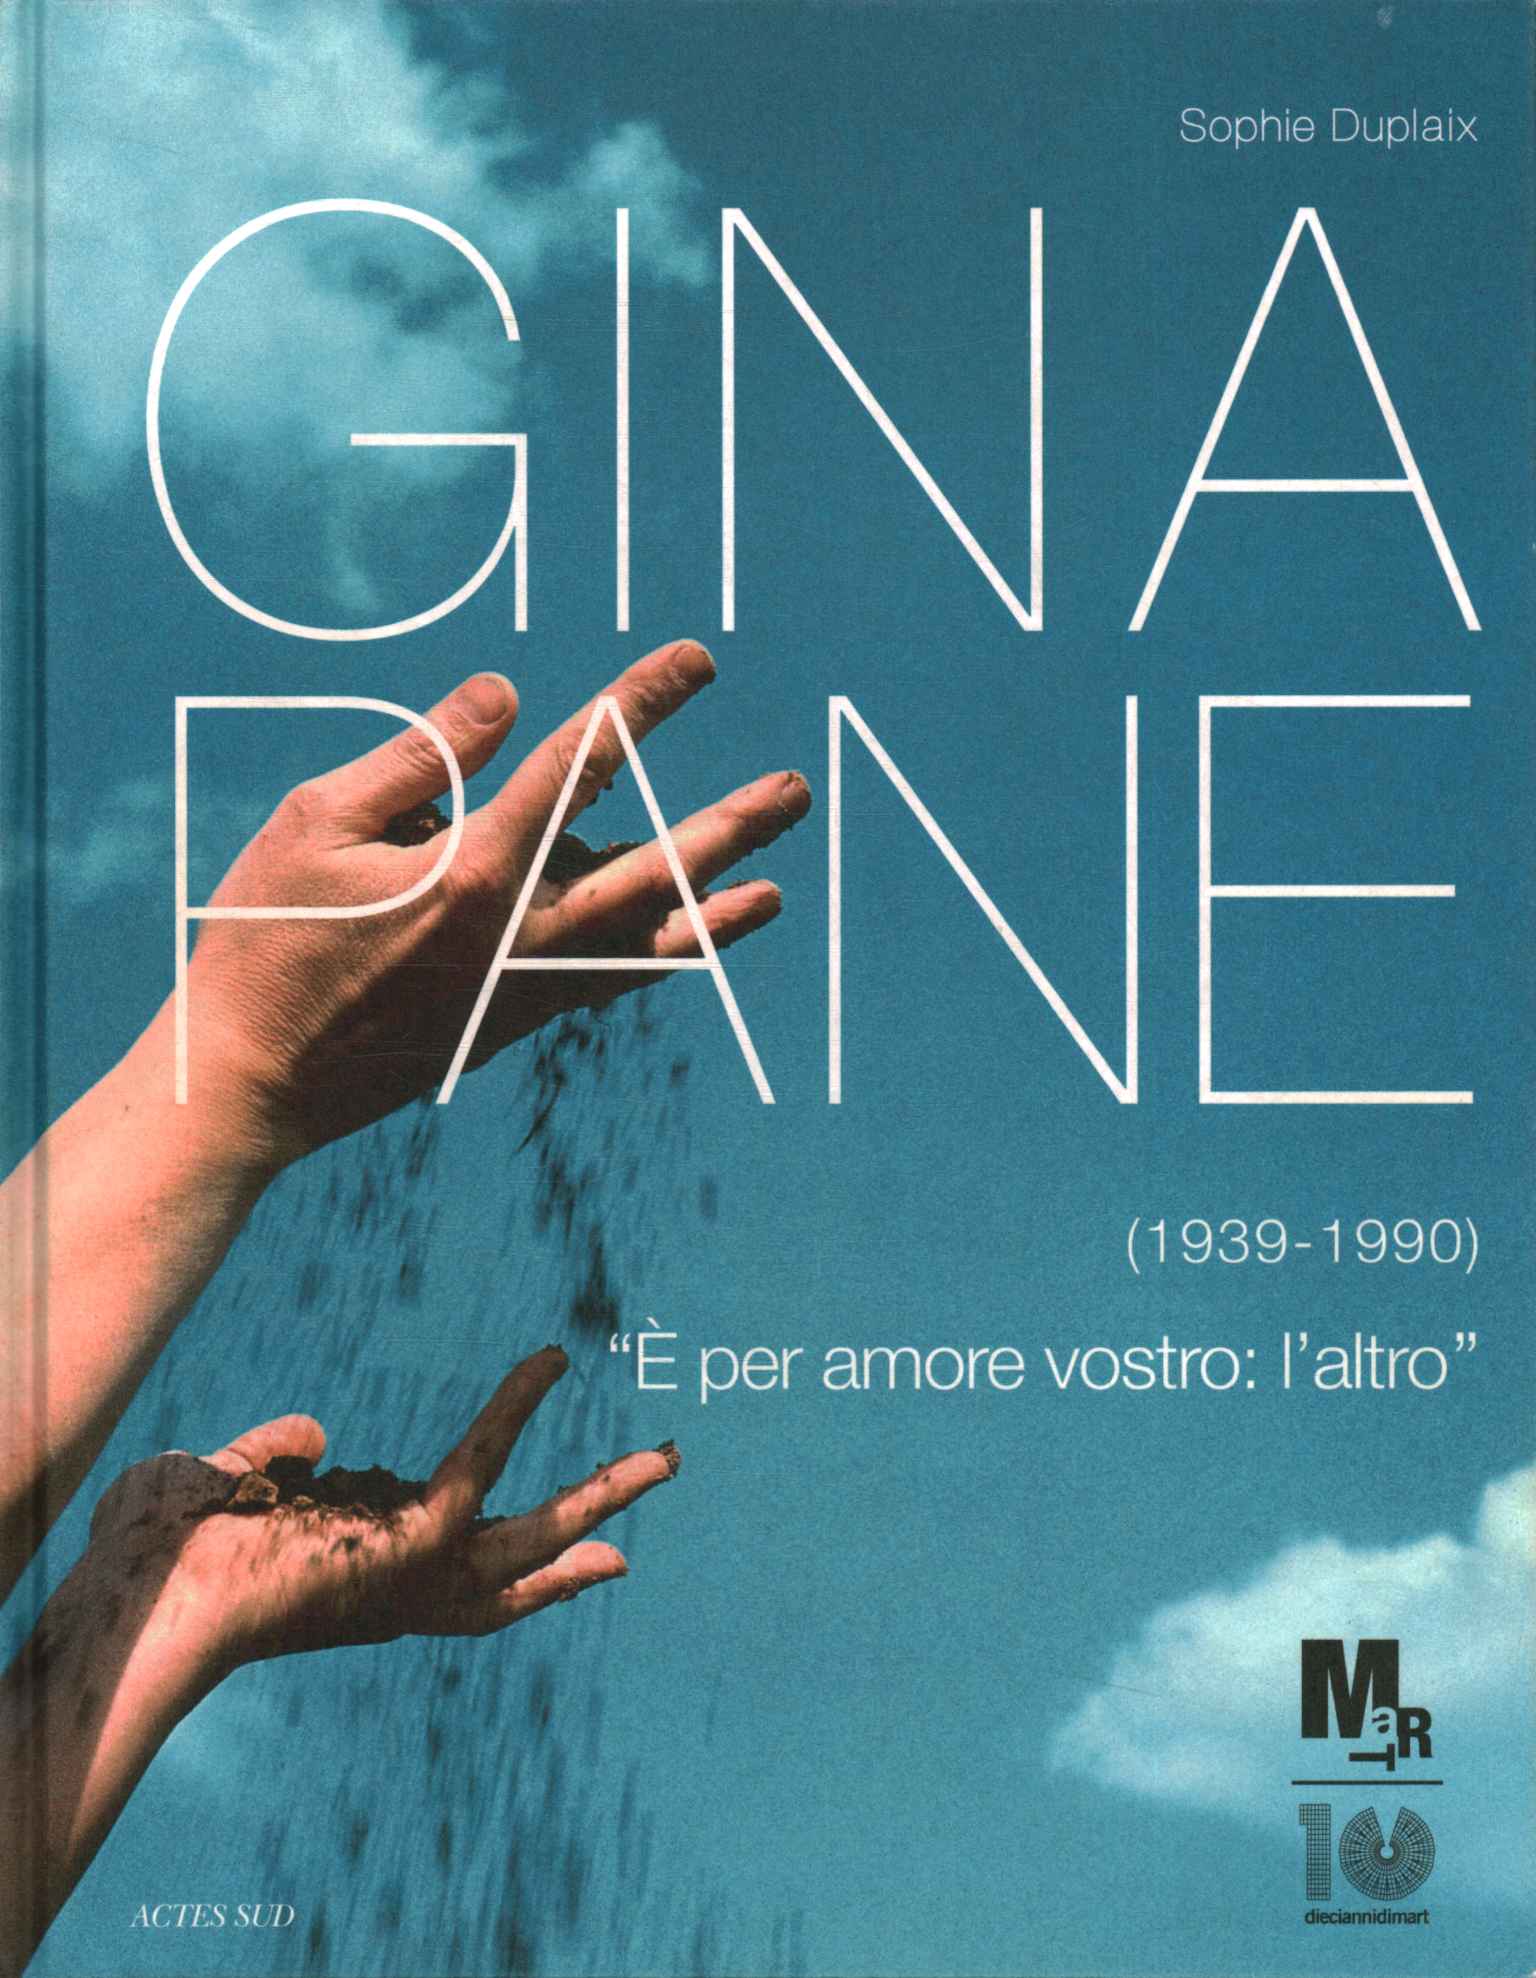 Gina Panel (1939-1990)